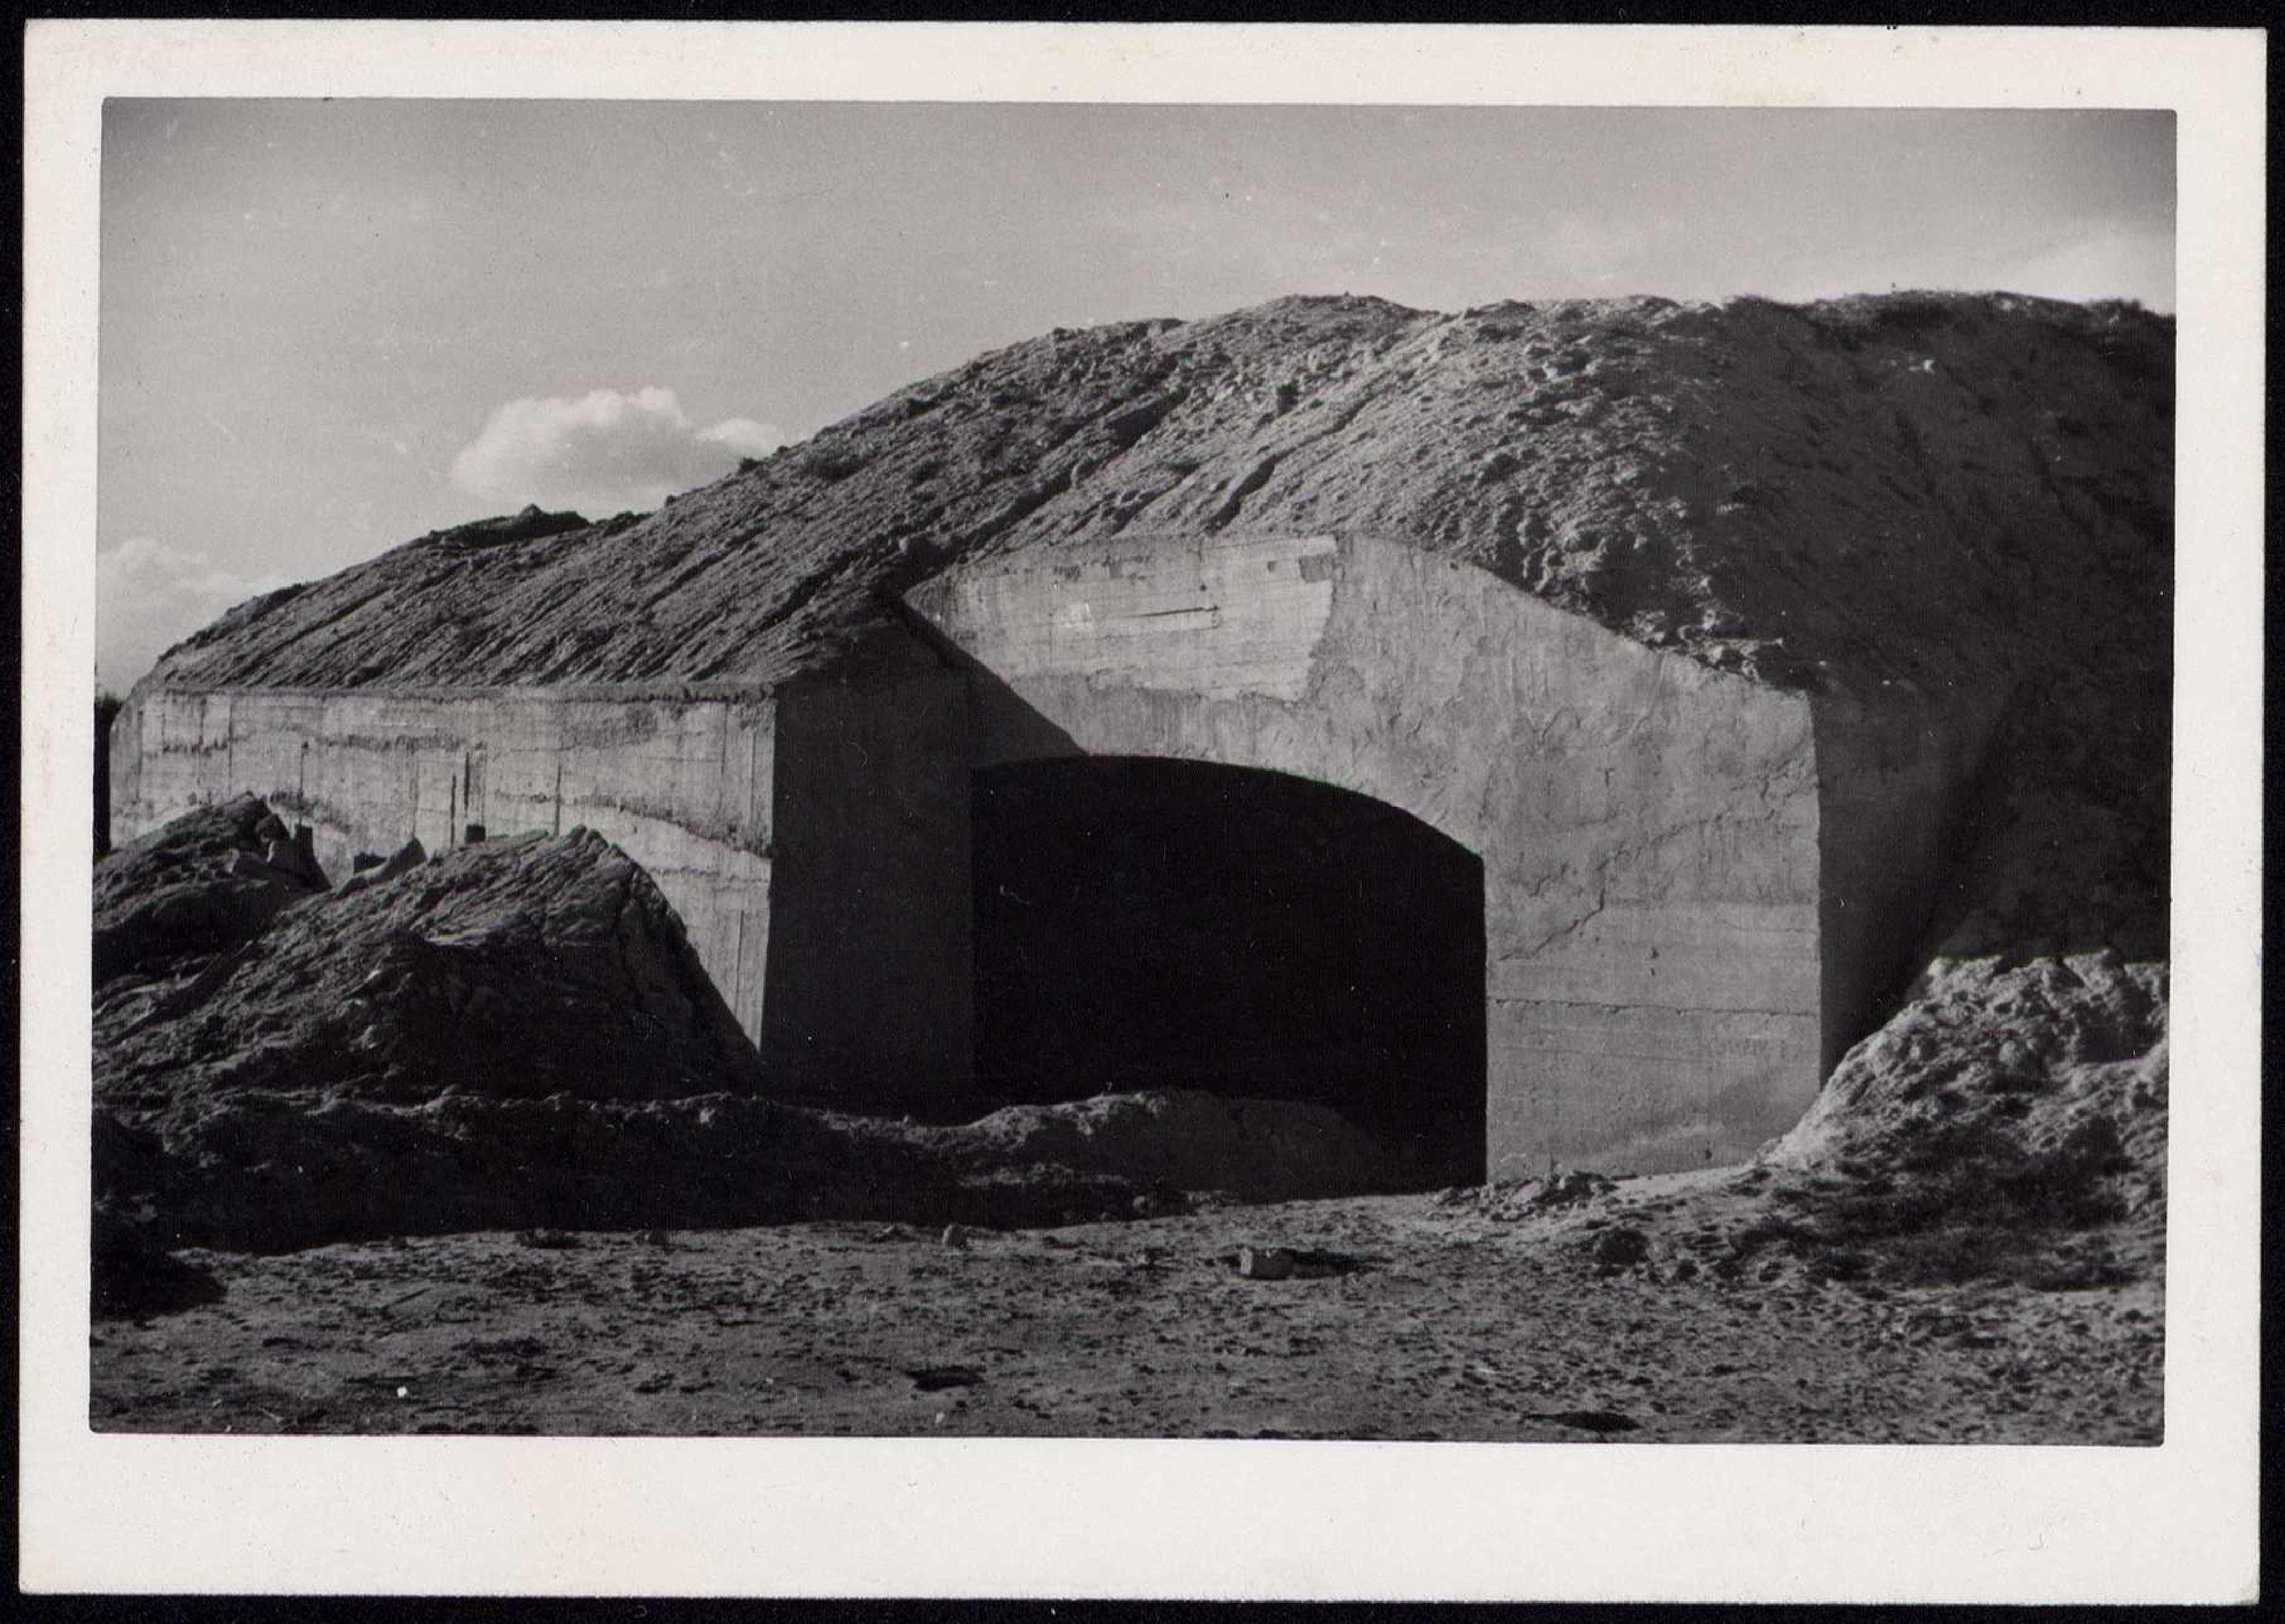 foto en primer plano de un bunker excavado en la tierra